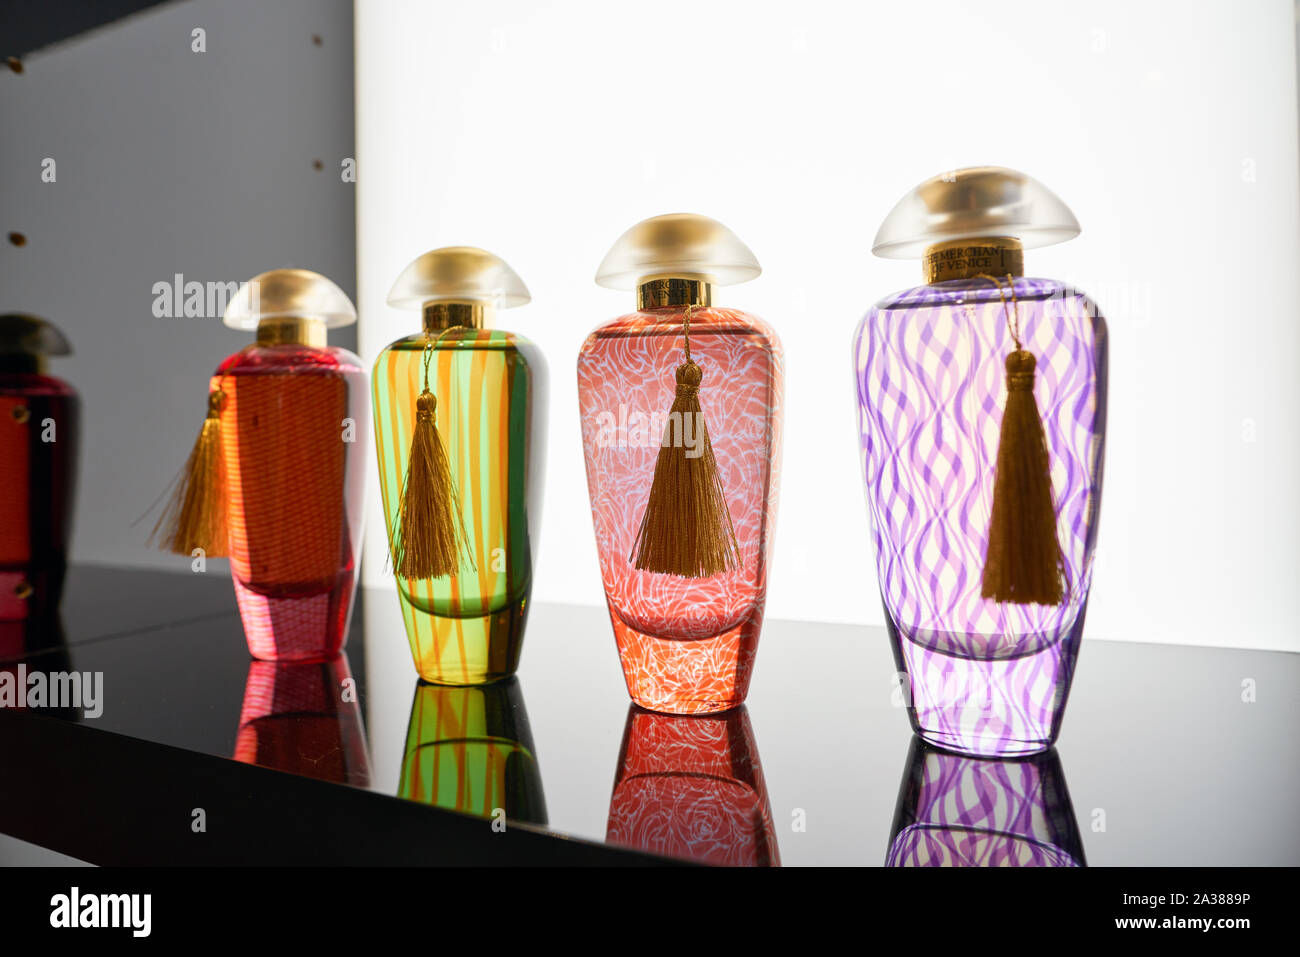 Tienda de perfumes primor fotografías e imágenes de alta resolución -  Página 4 - Alamy